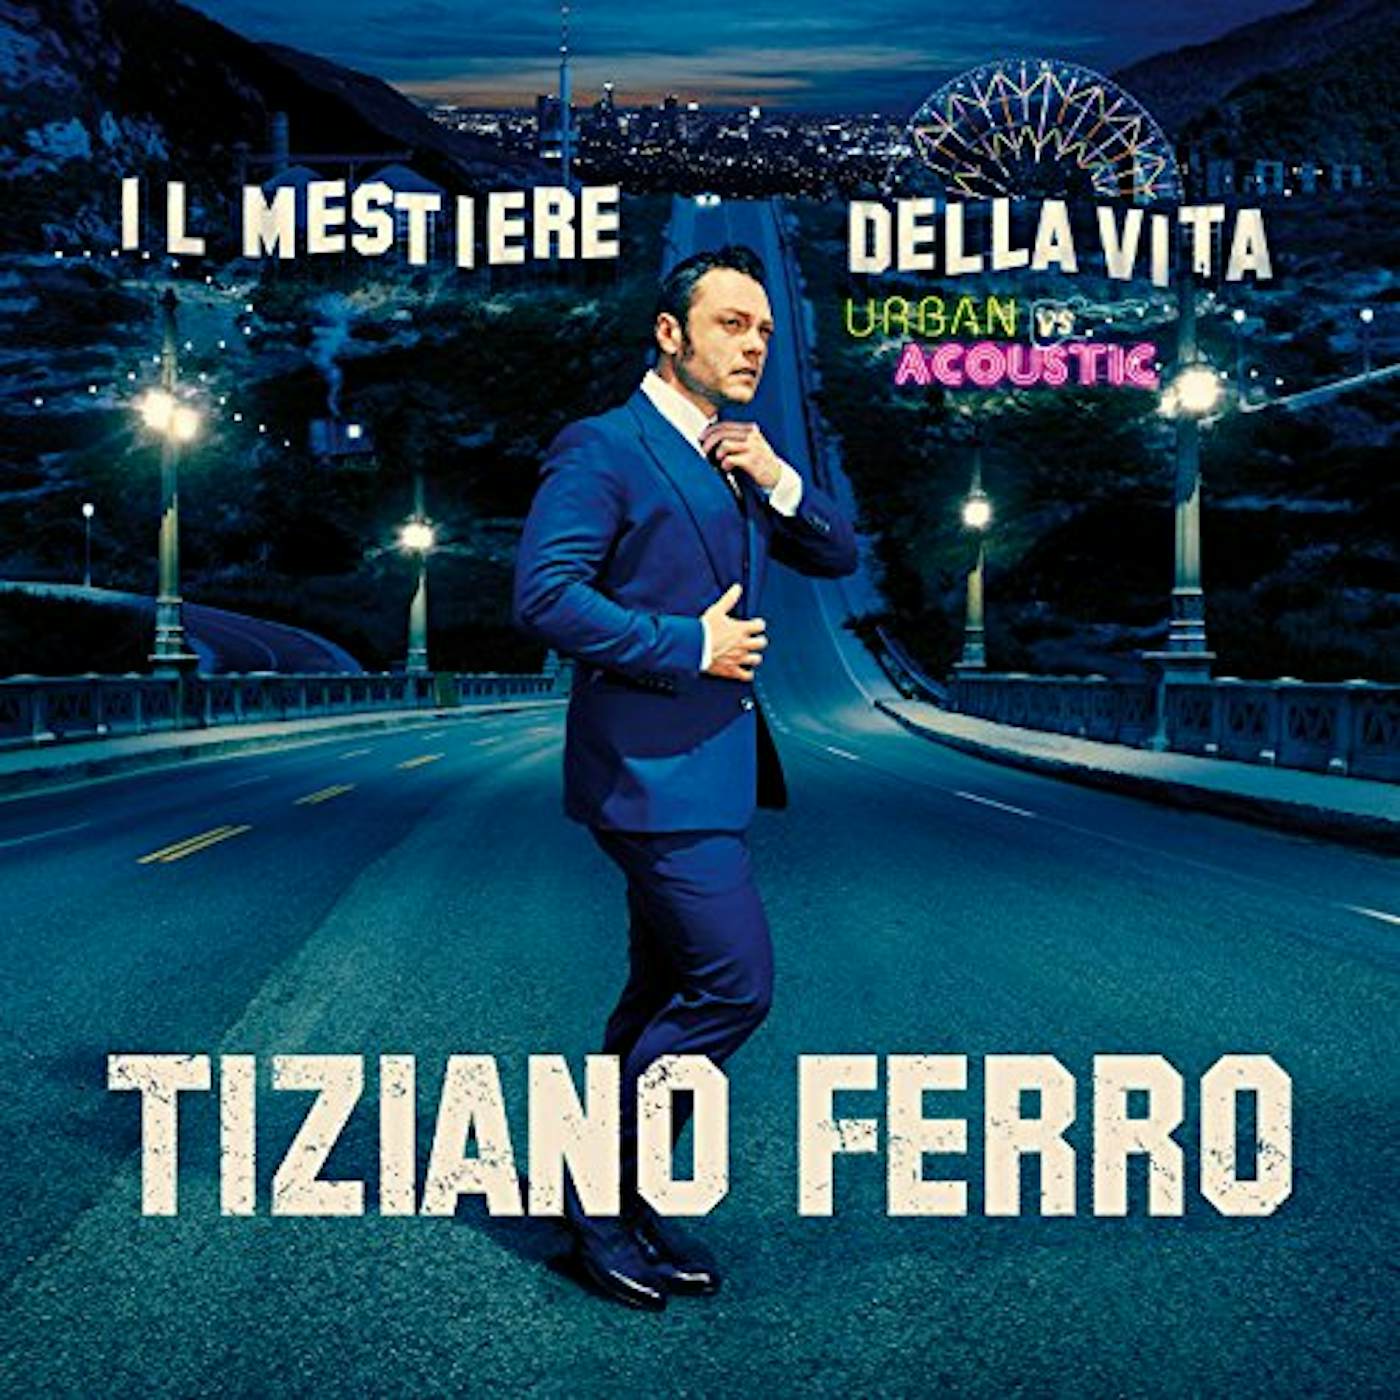 Tiziano Ferro IL MESTIERE DELLA VITA URBAN VS ACOUSTIC CD